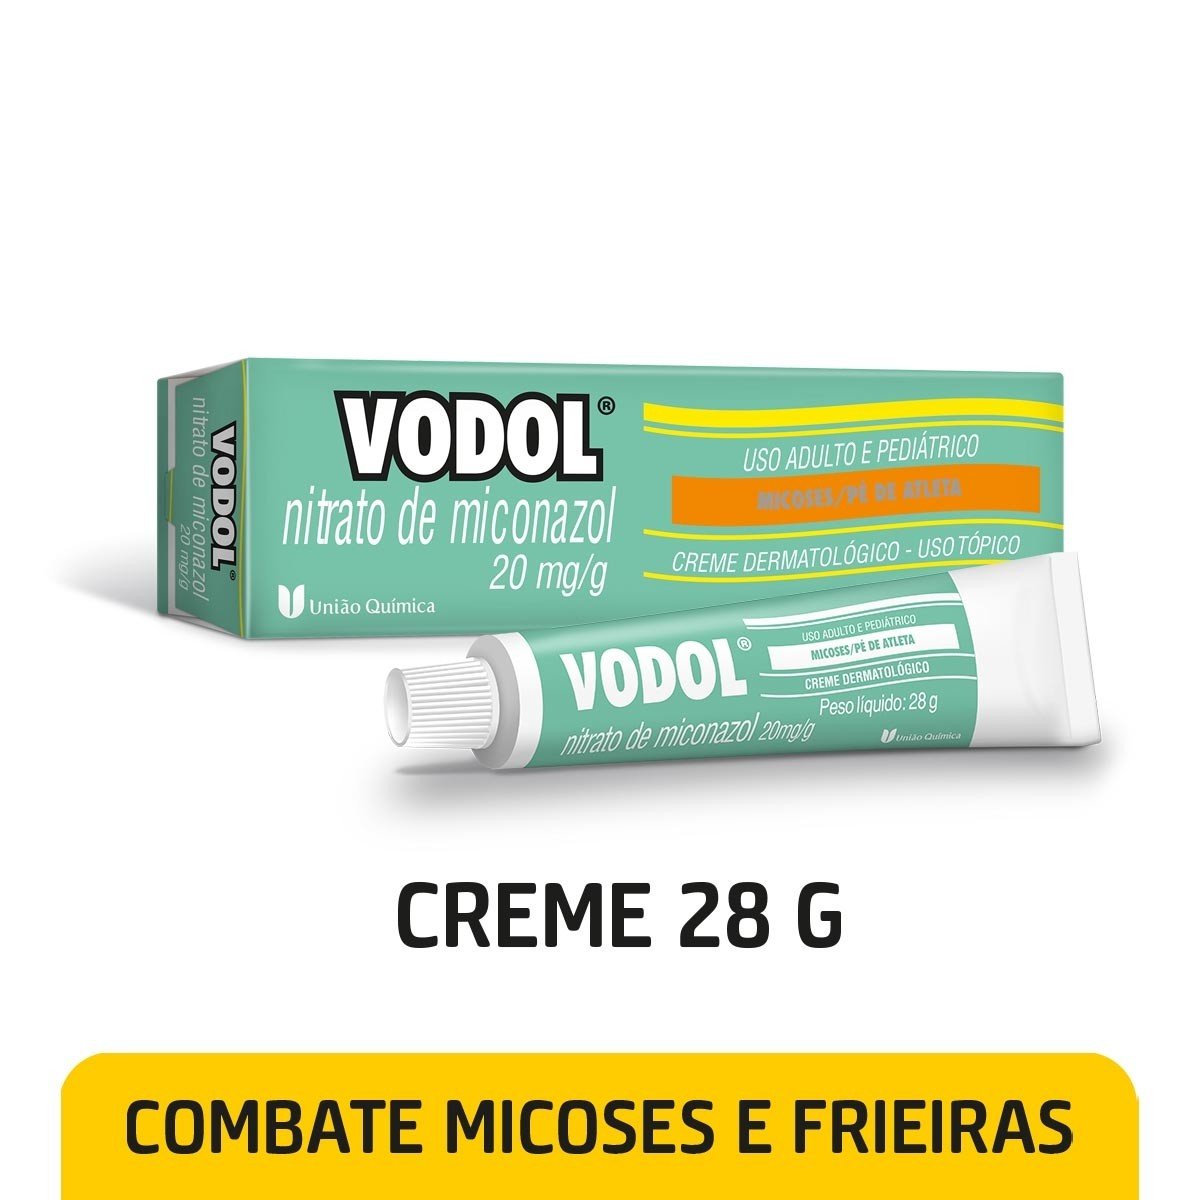 https://www.drogariaminasbrasil.com.br/media/product/91d/vodol-20mg-g-creme-c-28-g-671.jpg